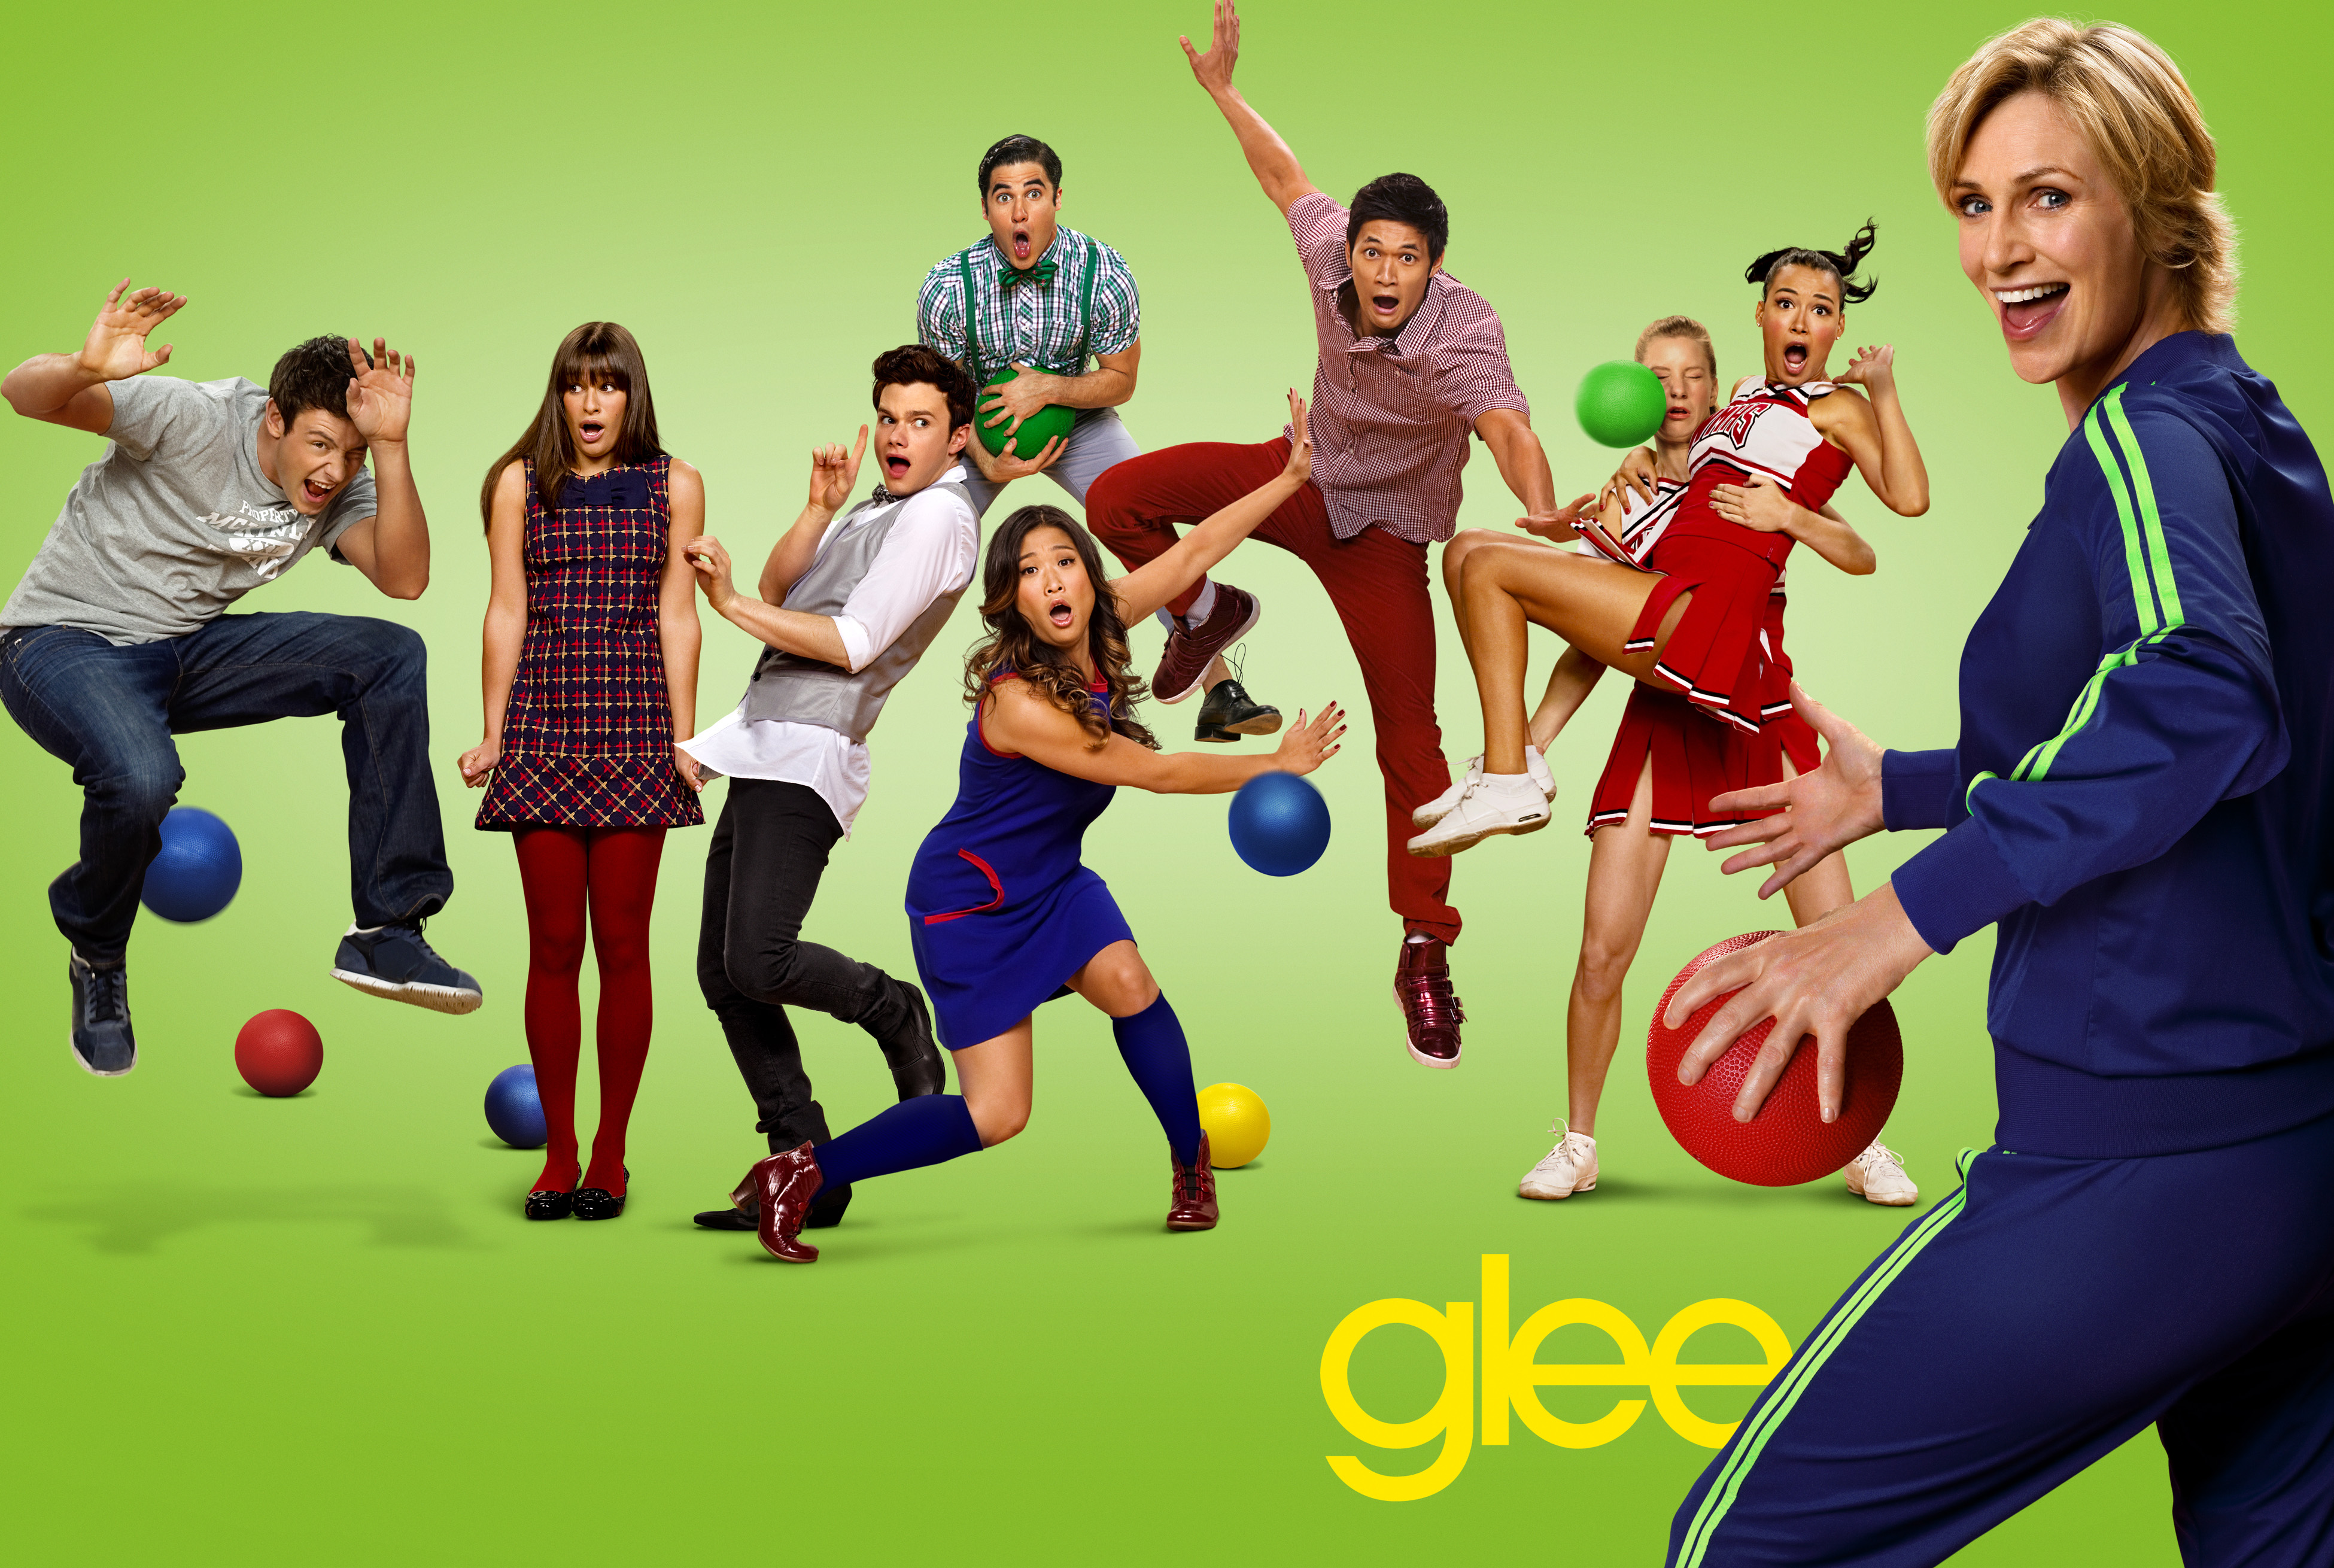 Glee #9